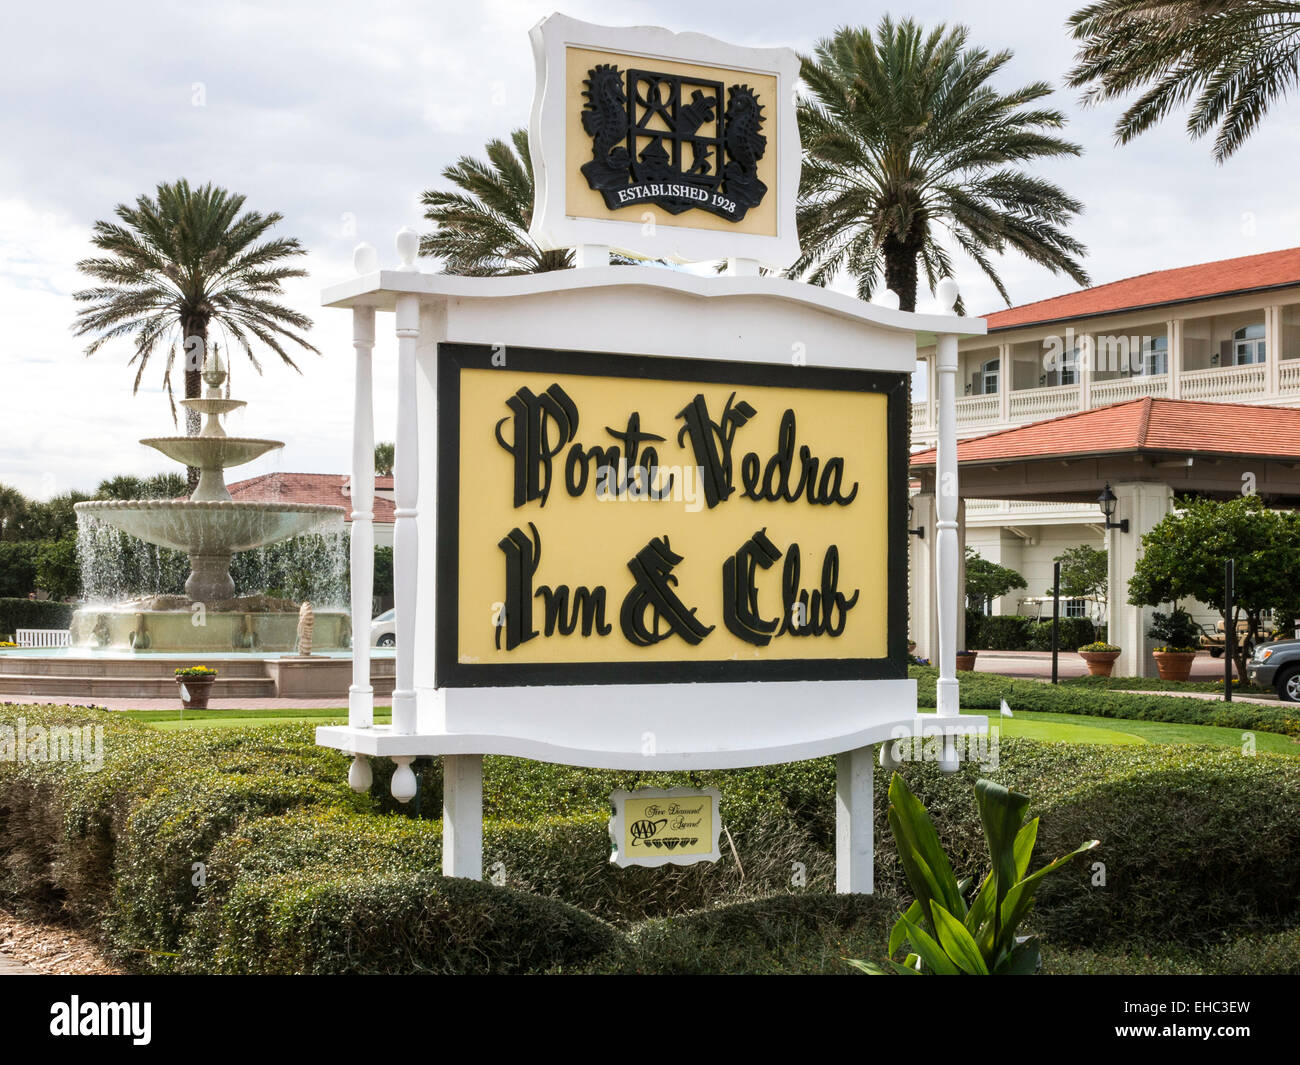 Ponte Vedre inn & Club, Ponte Vedra Beach FL, USA Stock Photo